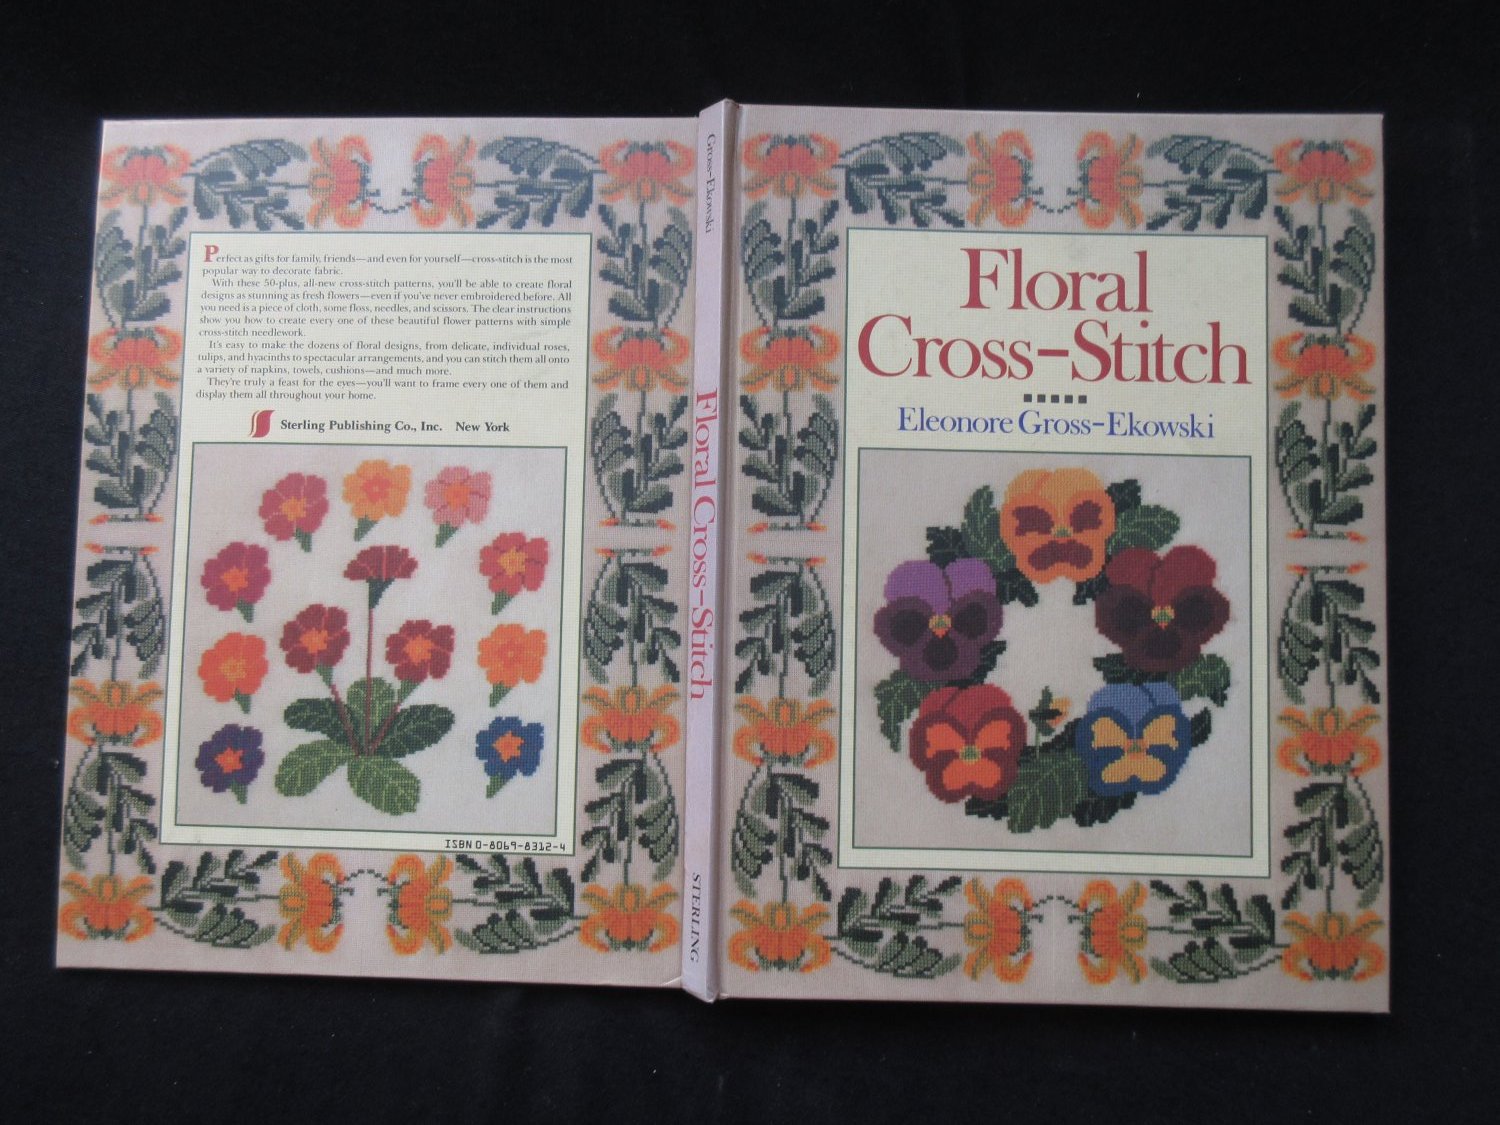 Floral Cross-Stitch Sticken “ (Eleonore Gross-Ekowski) – Buch gebraucht  kaufen – A02wSlD101ZZI